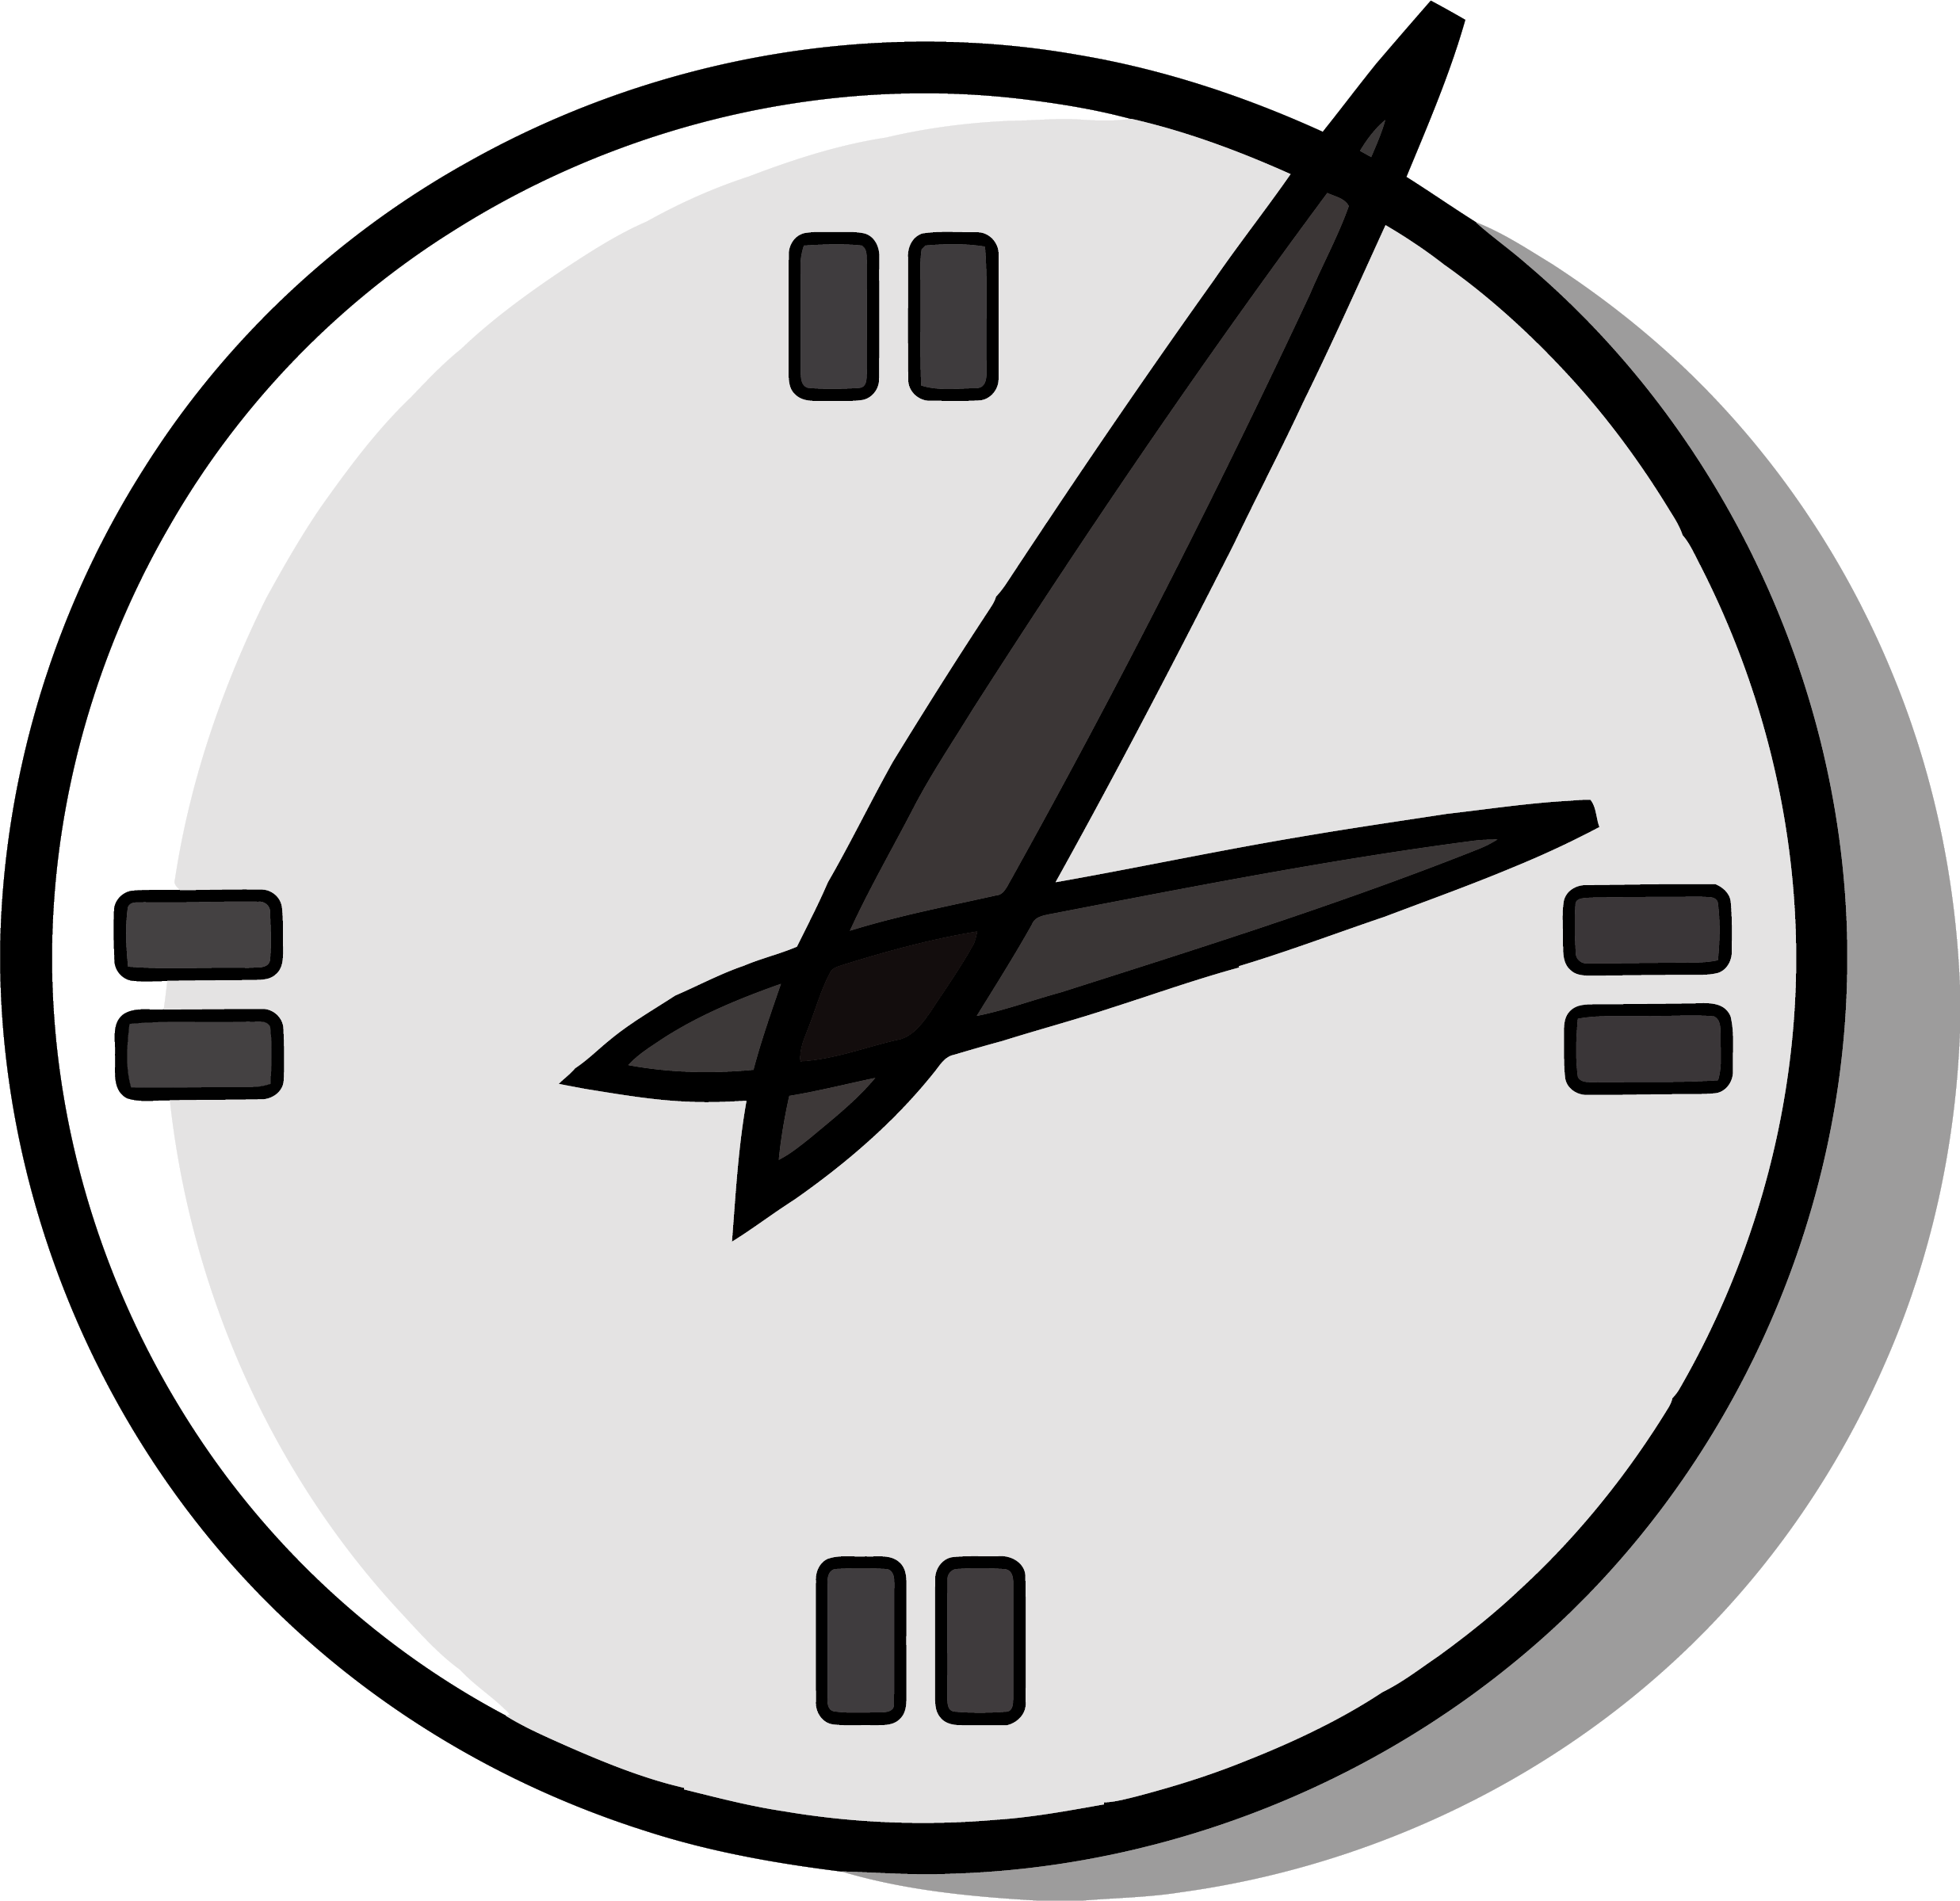 Час лого. Значок часов. Часы изображение. Рисунок часов. Часы логотип.